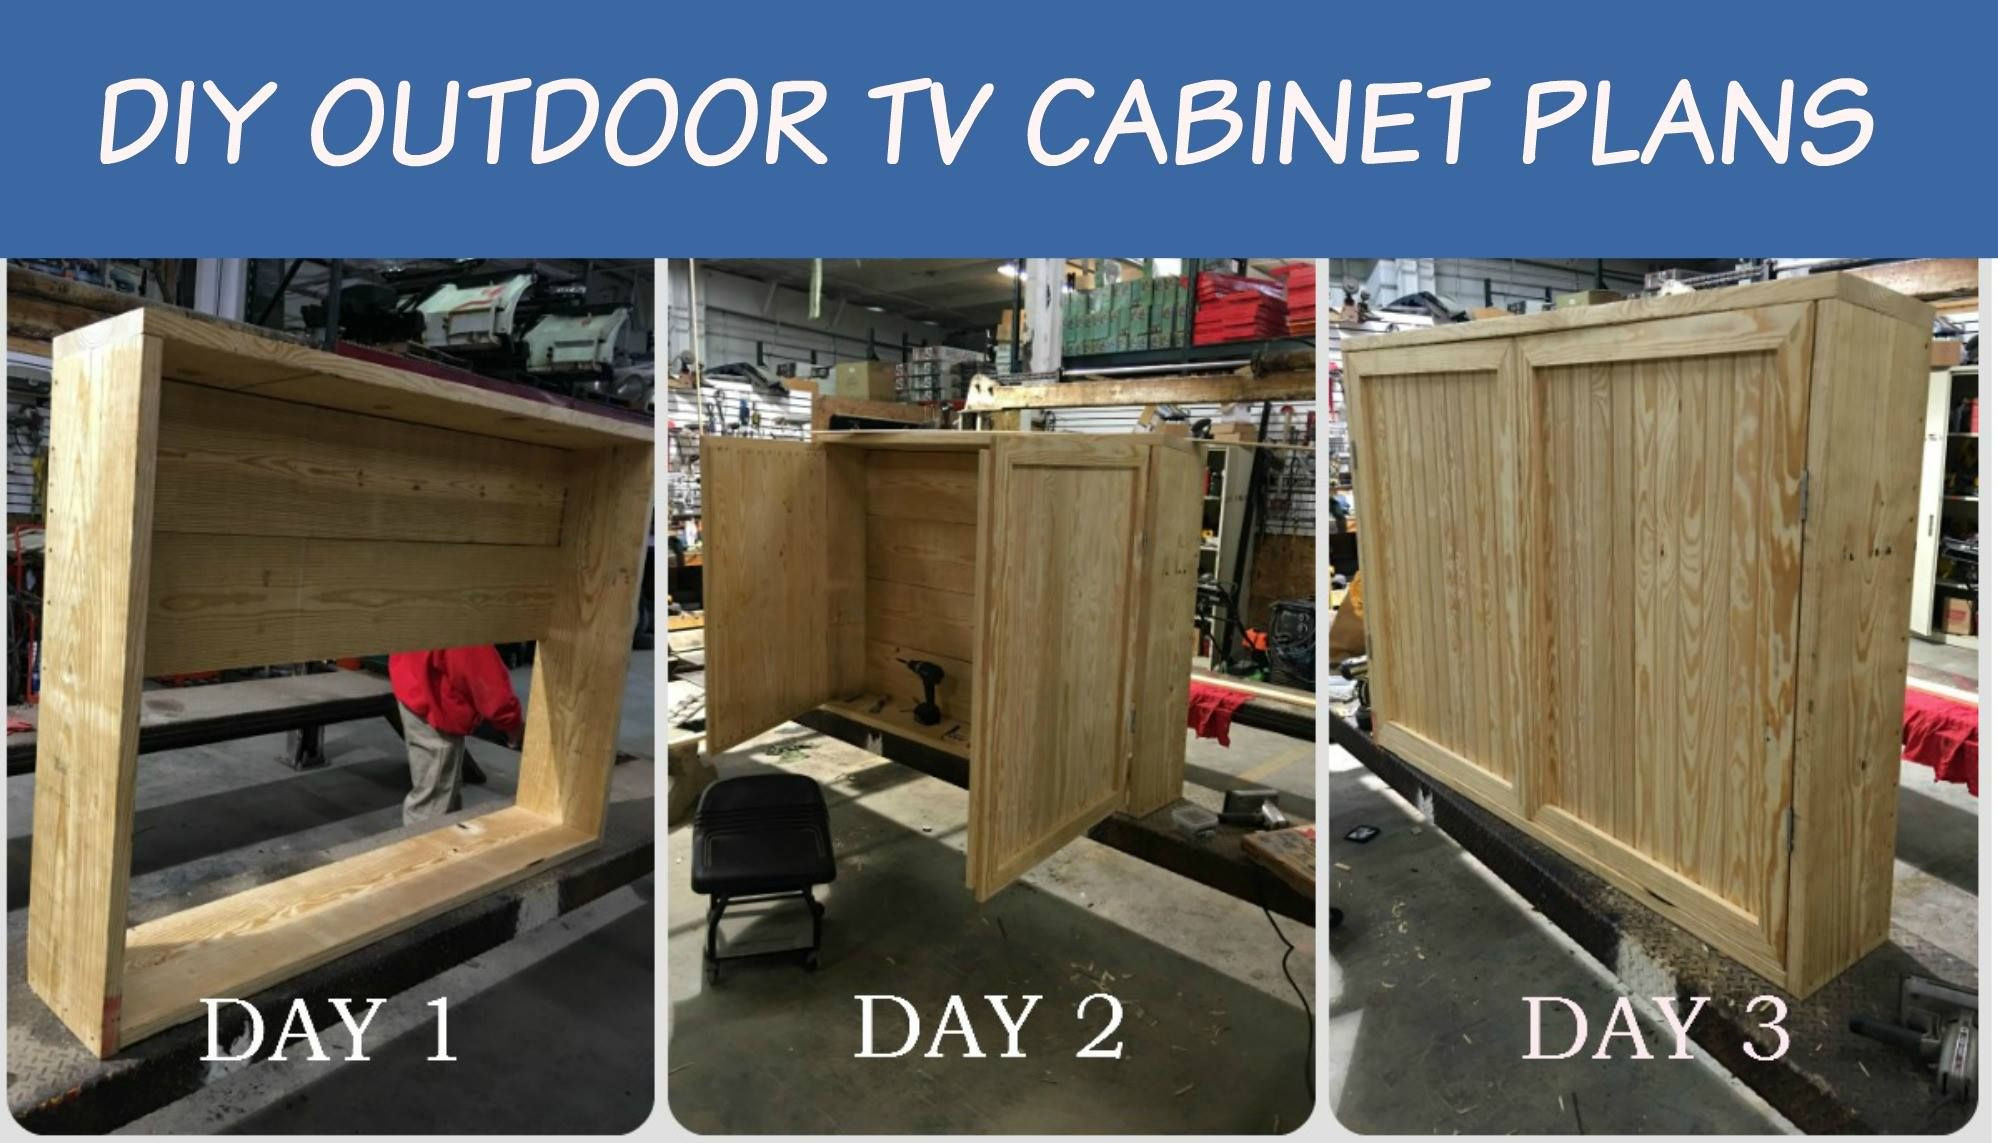 DIY Outdoor Tv Cabinet Plans
 Outdoor TV Cabinet with Double Doors Building Plan